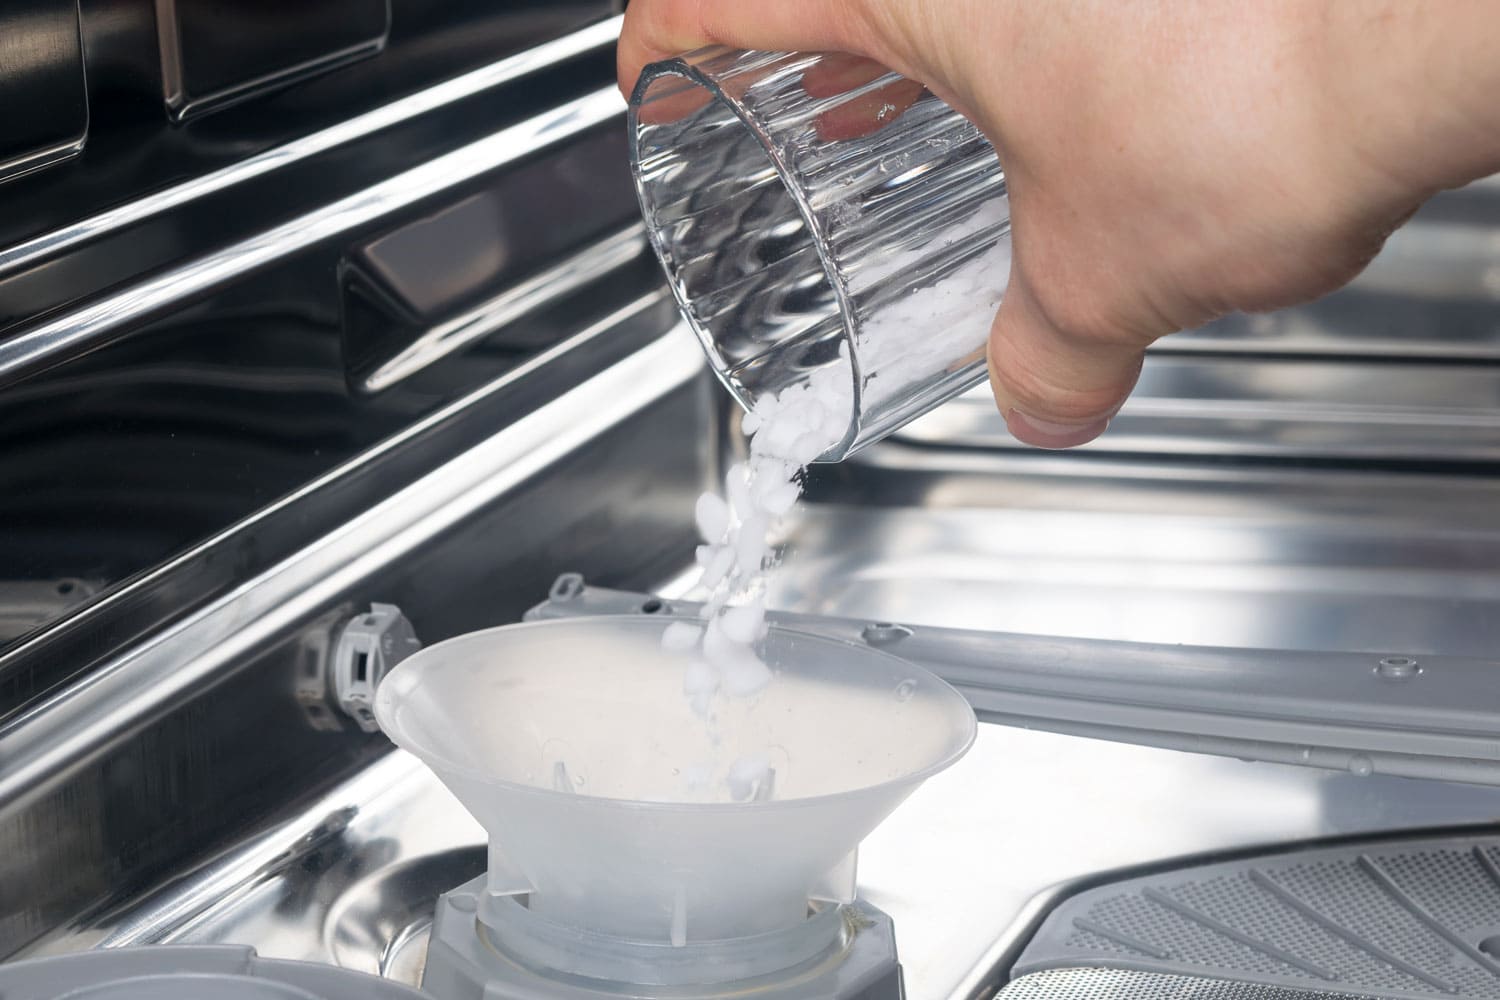 Adding dishwasher salt to the dishwasher